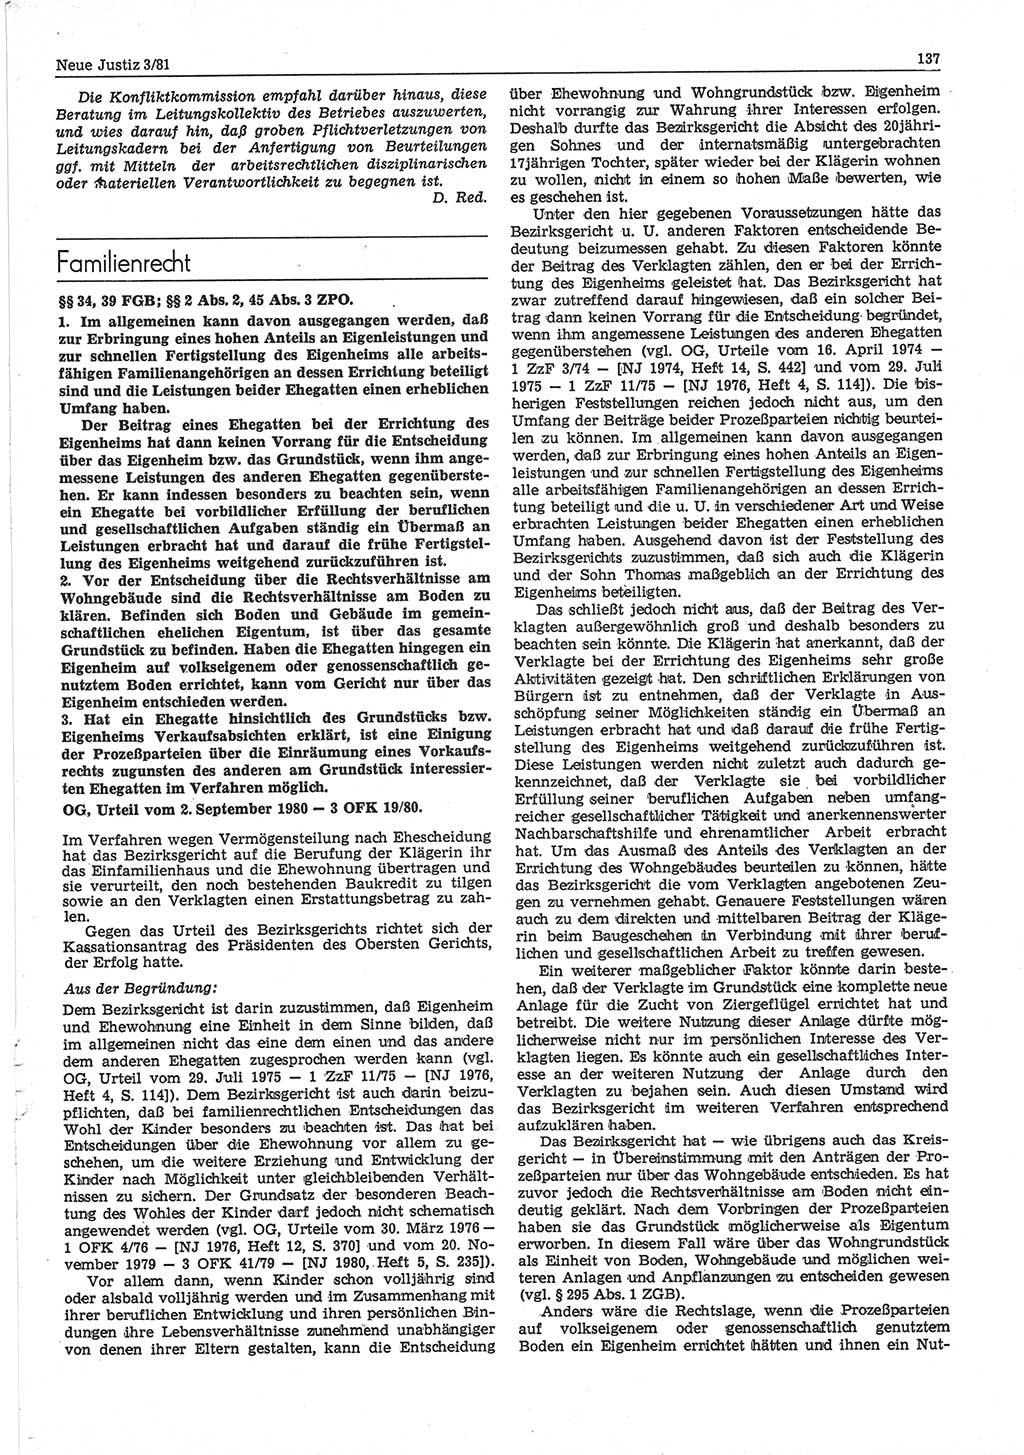 Neue Justiz (NJ), Zeitschrift für sozialistisches Recht und Gesetzlichkeit [Deutsche Demokratische Republik (DDR)], 35. Jahrgang 1981, Seite 137 (NJ DDR 1981, S. 137)